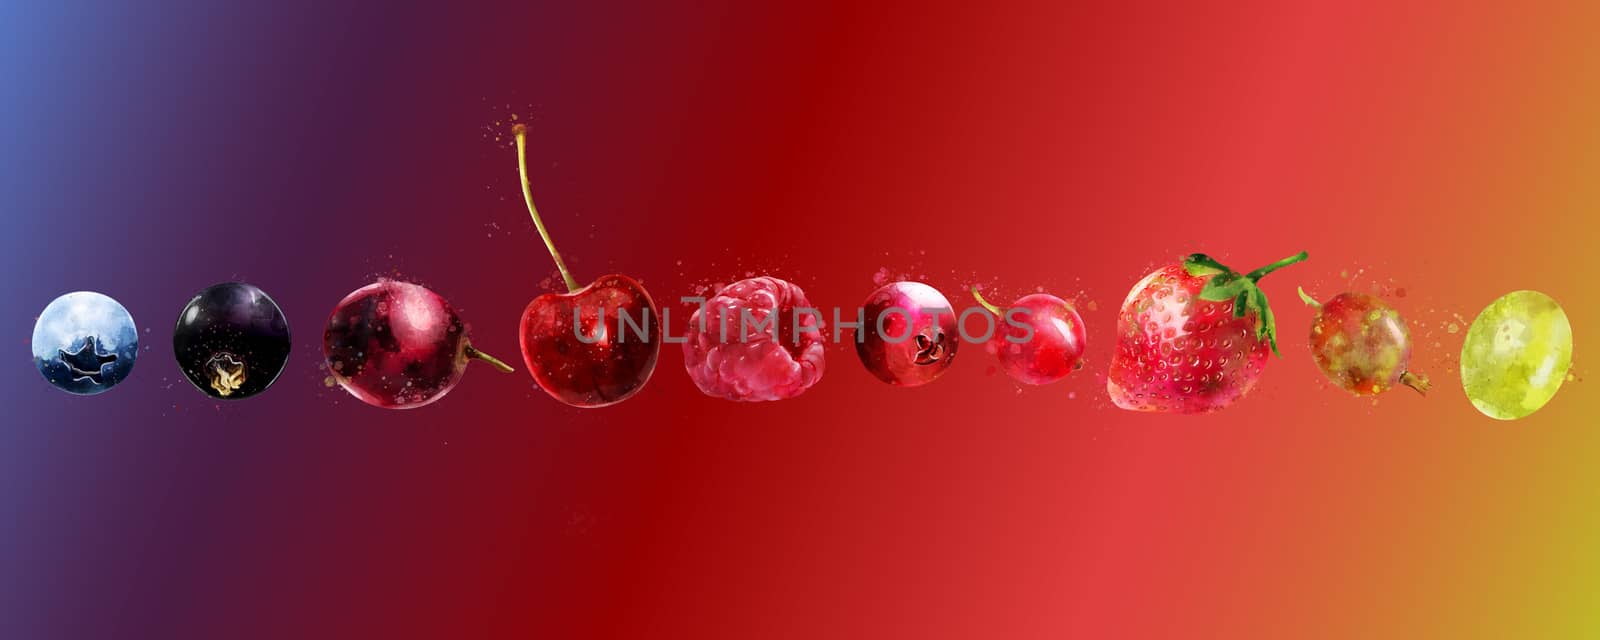 Cherries, strawberries, gooseberries, blueberries, raspberries, currants, blackberries, grapes and cranberries illustrations.